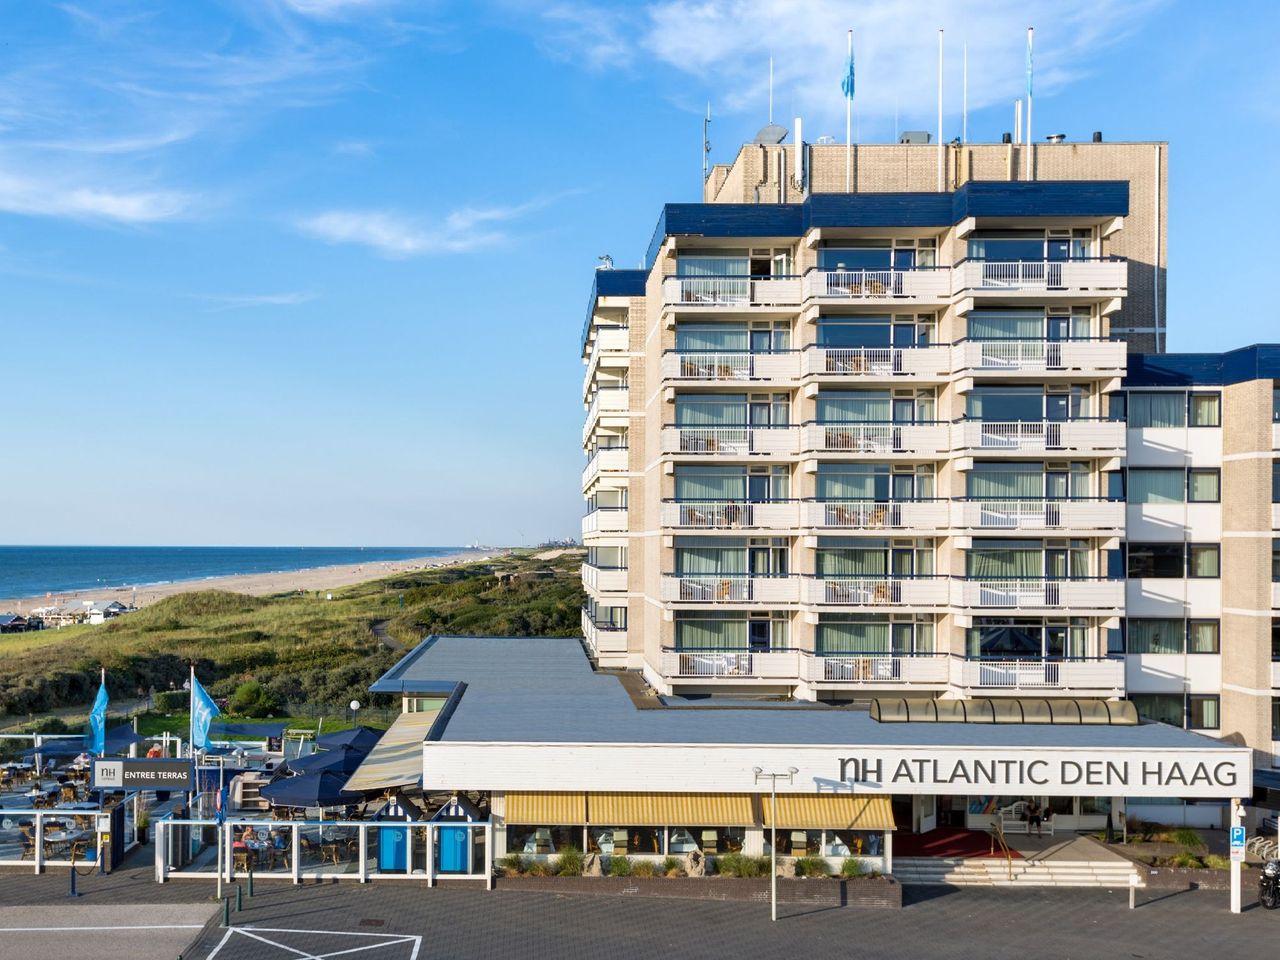 4 Tage im Hotel NH Atlantic Den Haag mit Frühstück